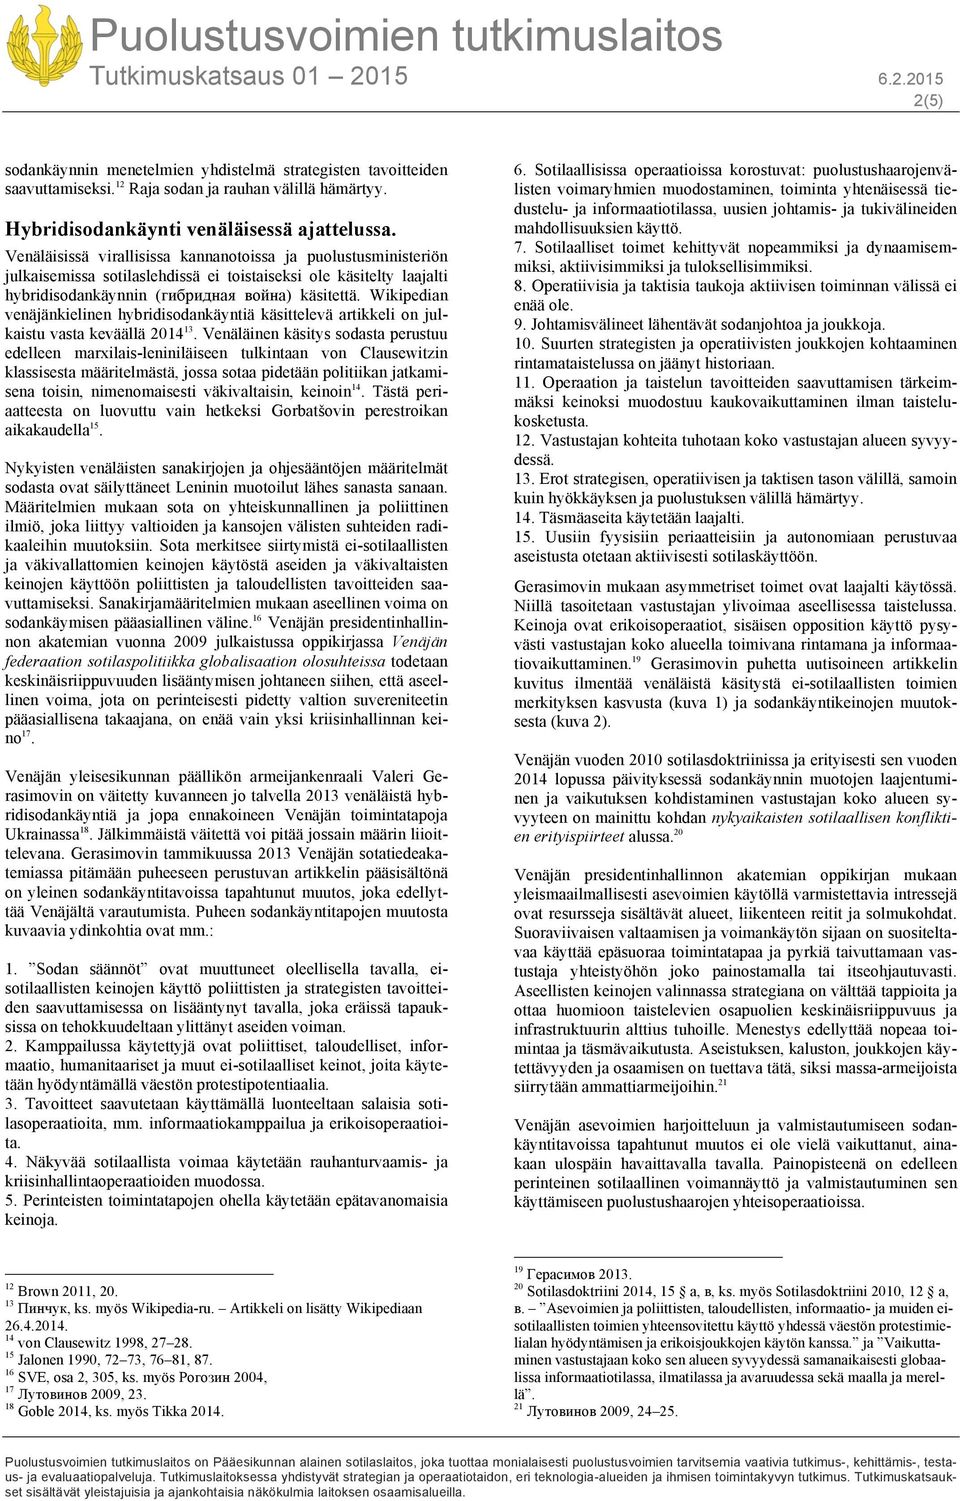 Wikipedian venäjänkielinen hybridisodankäyntiä käsittelevä artikkeli on julkaistu vasta keväällä 2014 13.